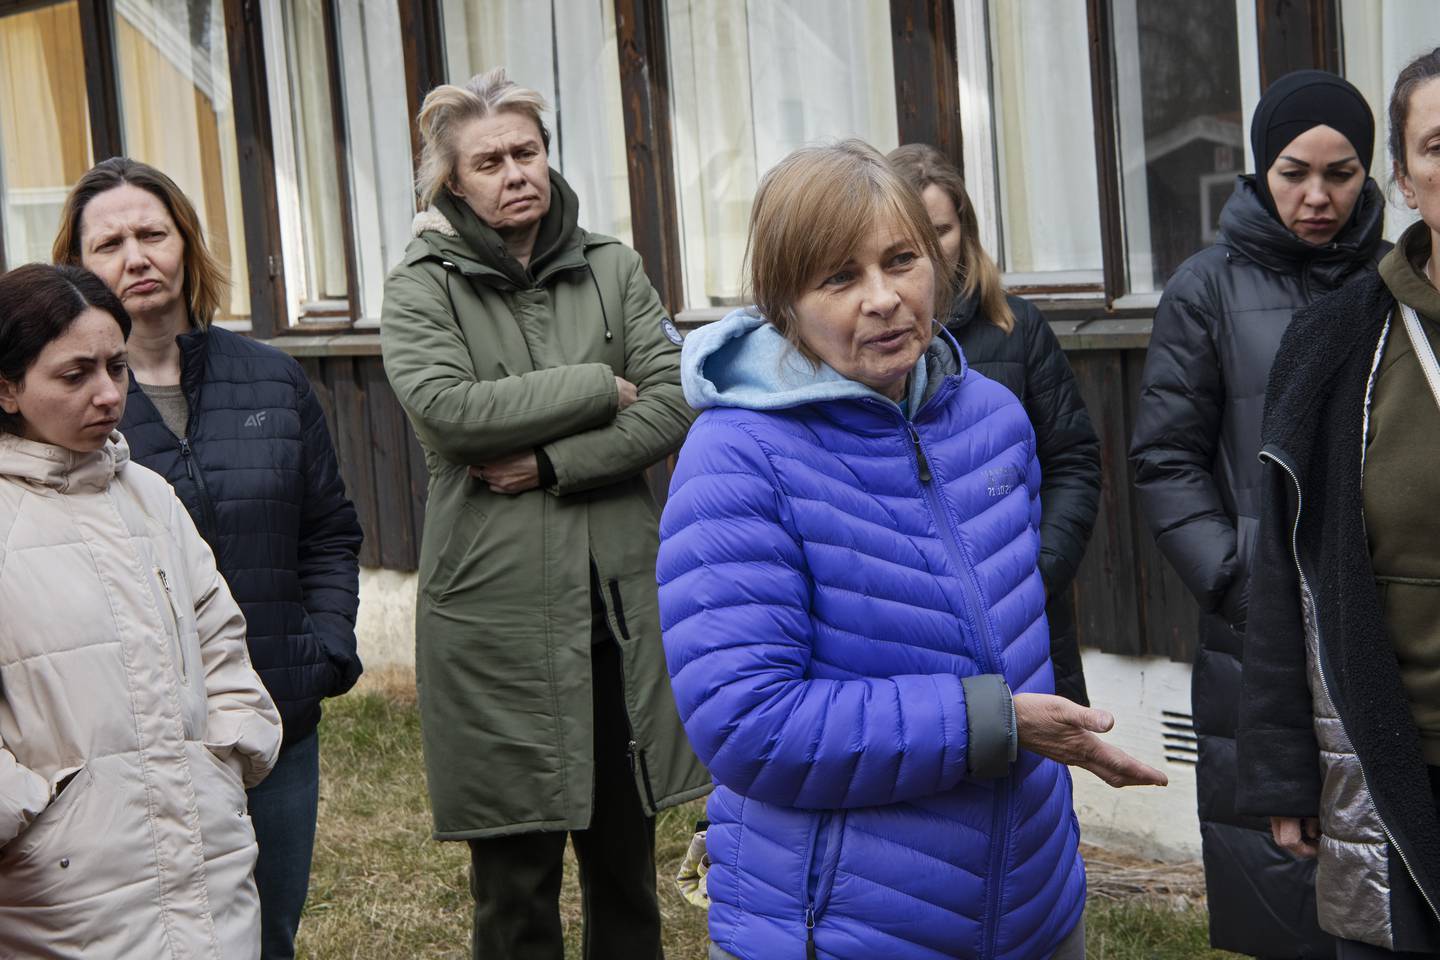 Flyktningemottak for ukrainske flyktninger utenfor Hønefoss.